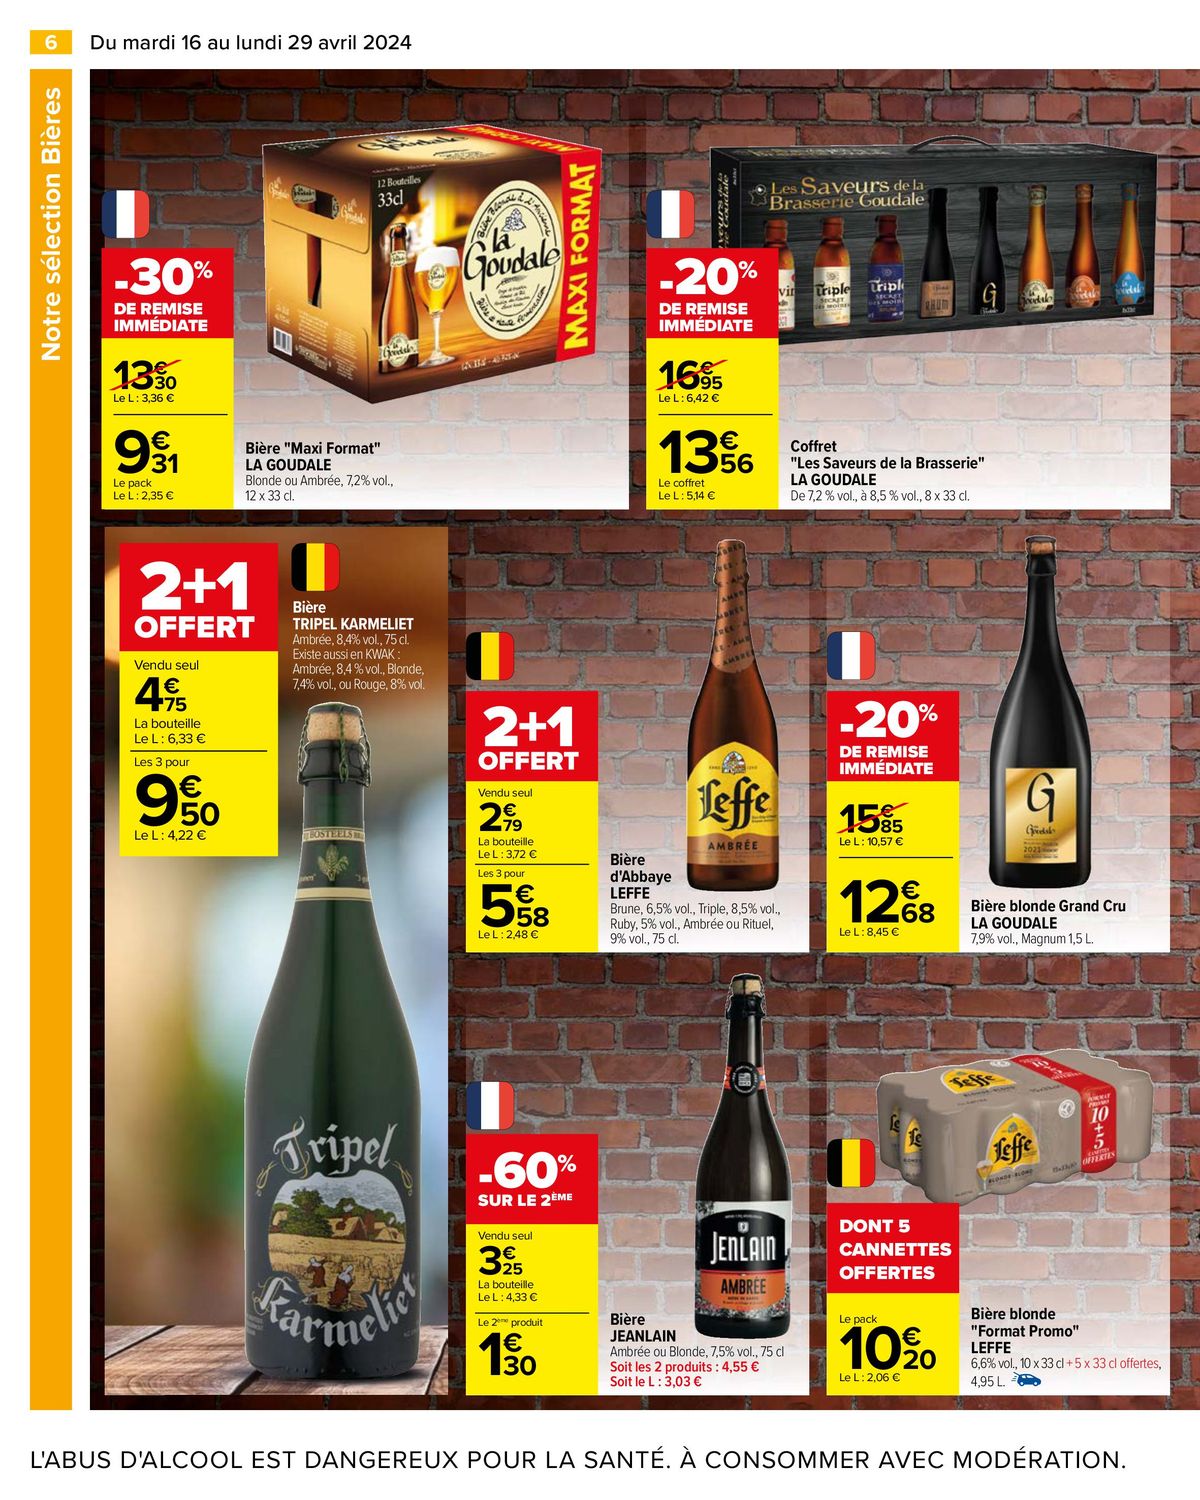 Catalogue Notre sélection Bières, page 00008